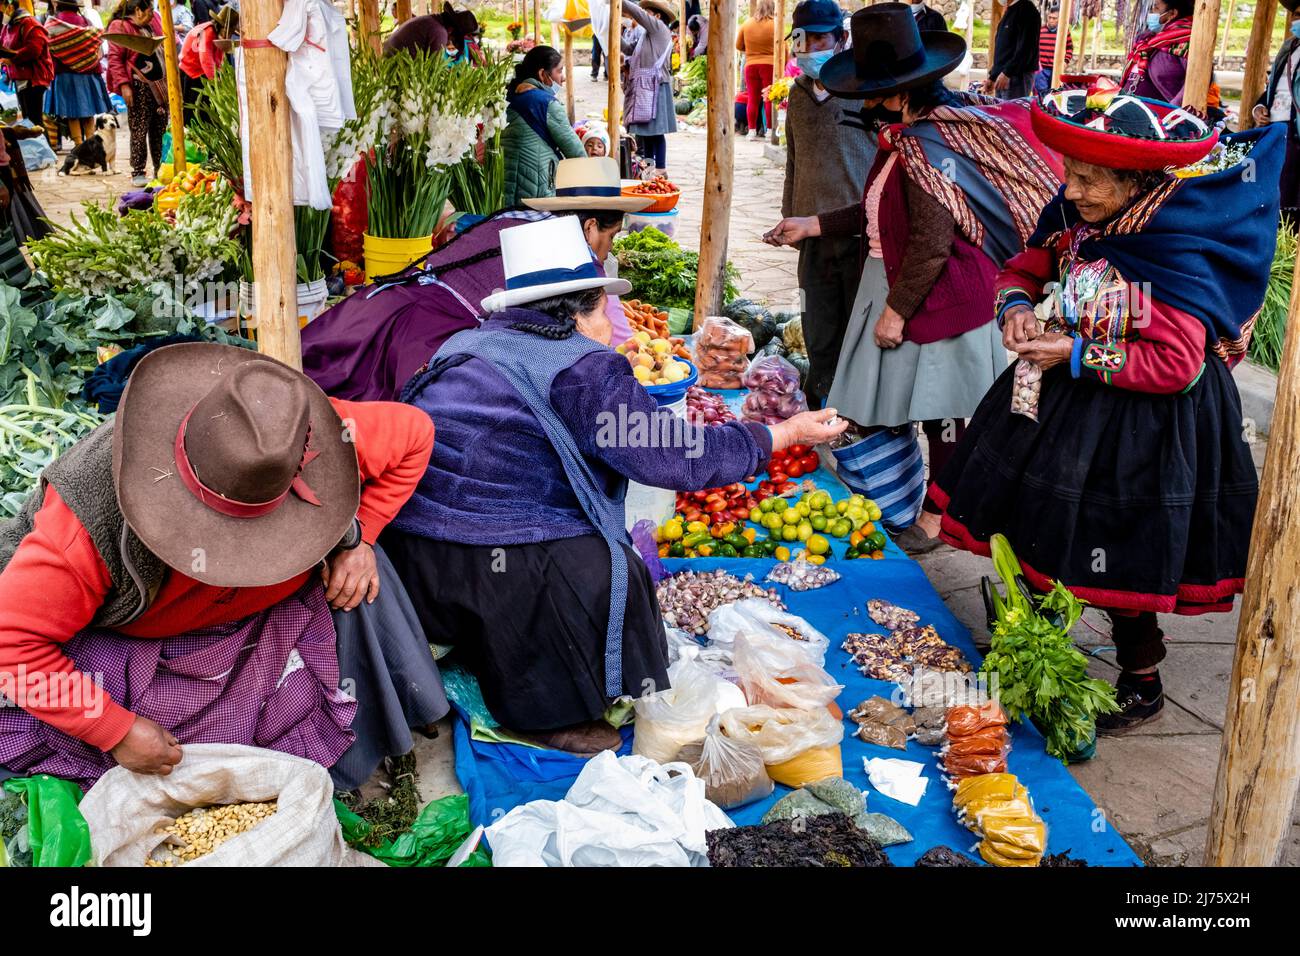 Femmes autochtones quechua vendant des légumes au marché du dimanche dans le village de Chinchero, la Vallée Sacrée, province d'Urubamba, Pérou. Banque D'Images